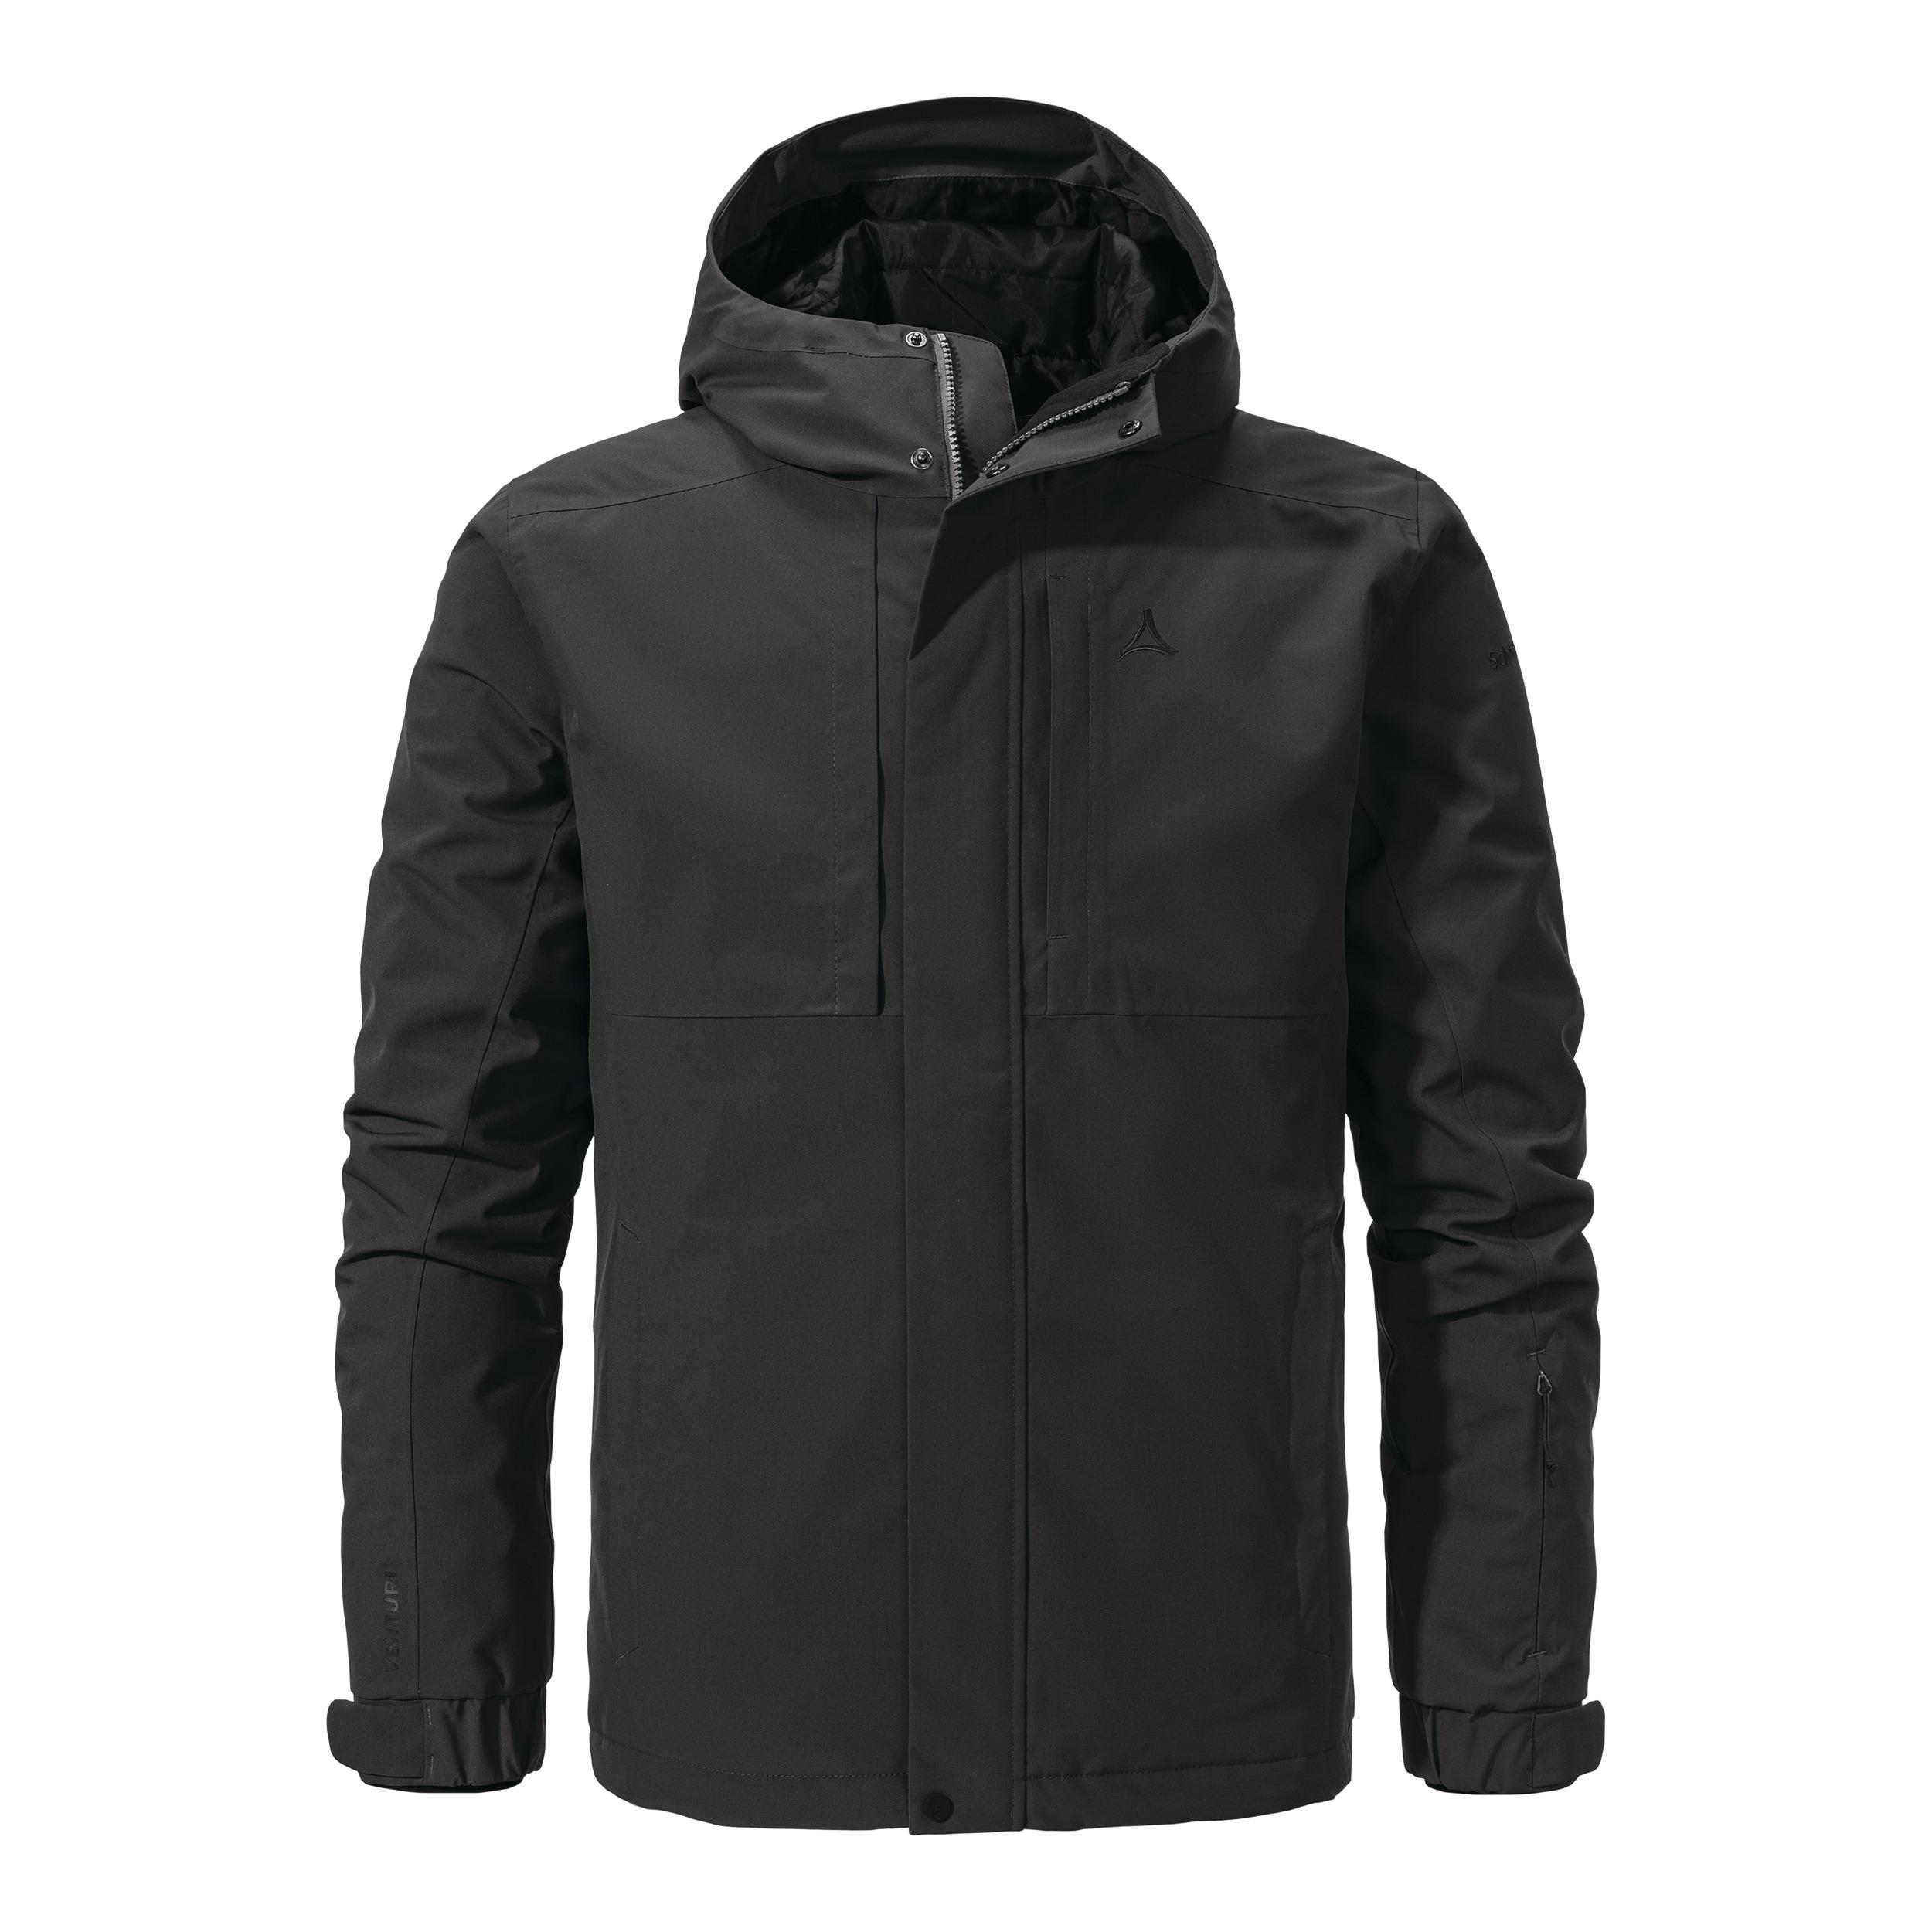 Schöffel Ins Jacket Antwerpen von Herren Outdoorjacke kaufen Shop im M Online SportScheck black